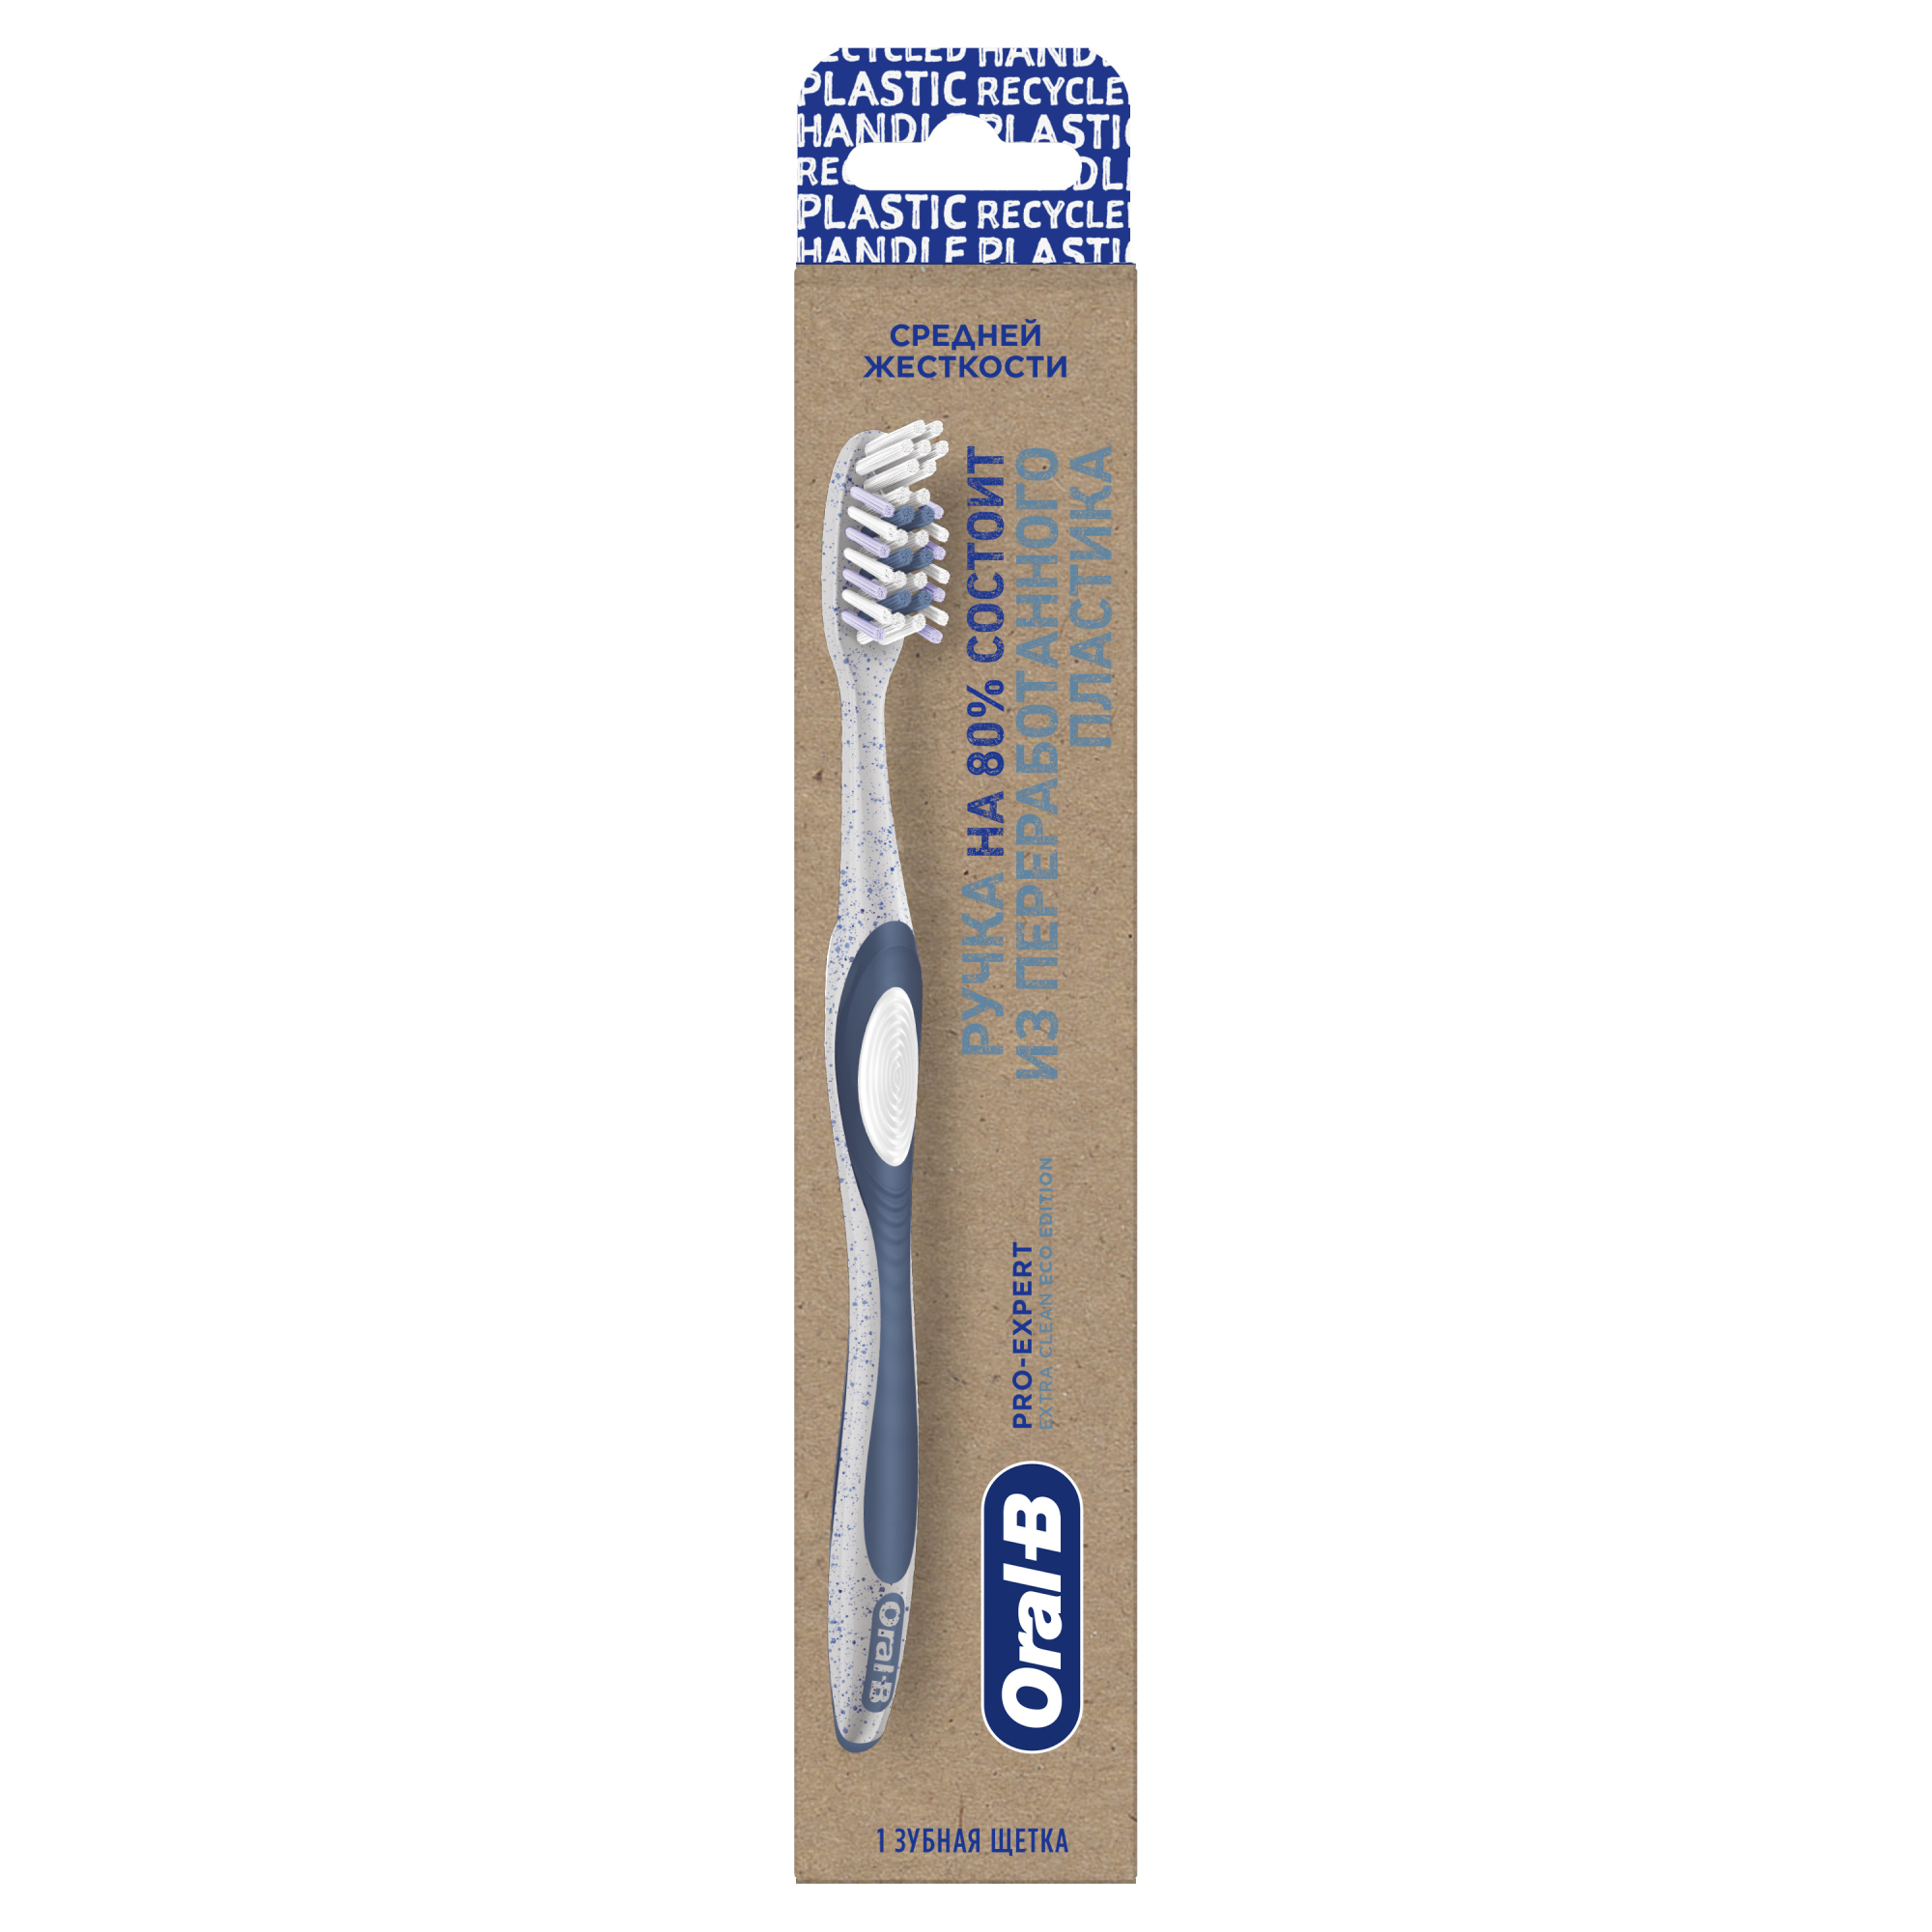 Зубная щетка Oral-B Pro-Expert Eco Edition из переработанного пластика для эффективного очищения, средней жесткости, 1 шт двусторонняя щетка расческа с волнистыми зубьями средняя 6 х 19 см голубая